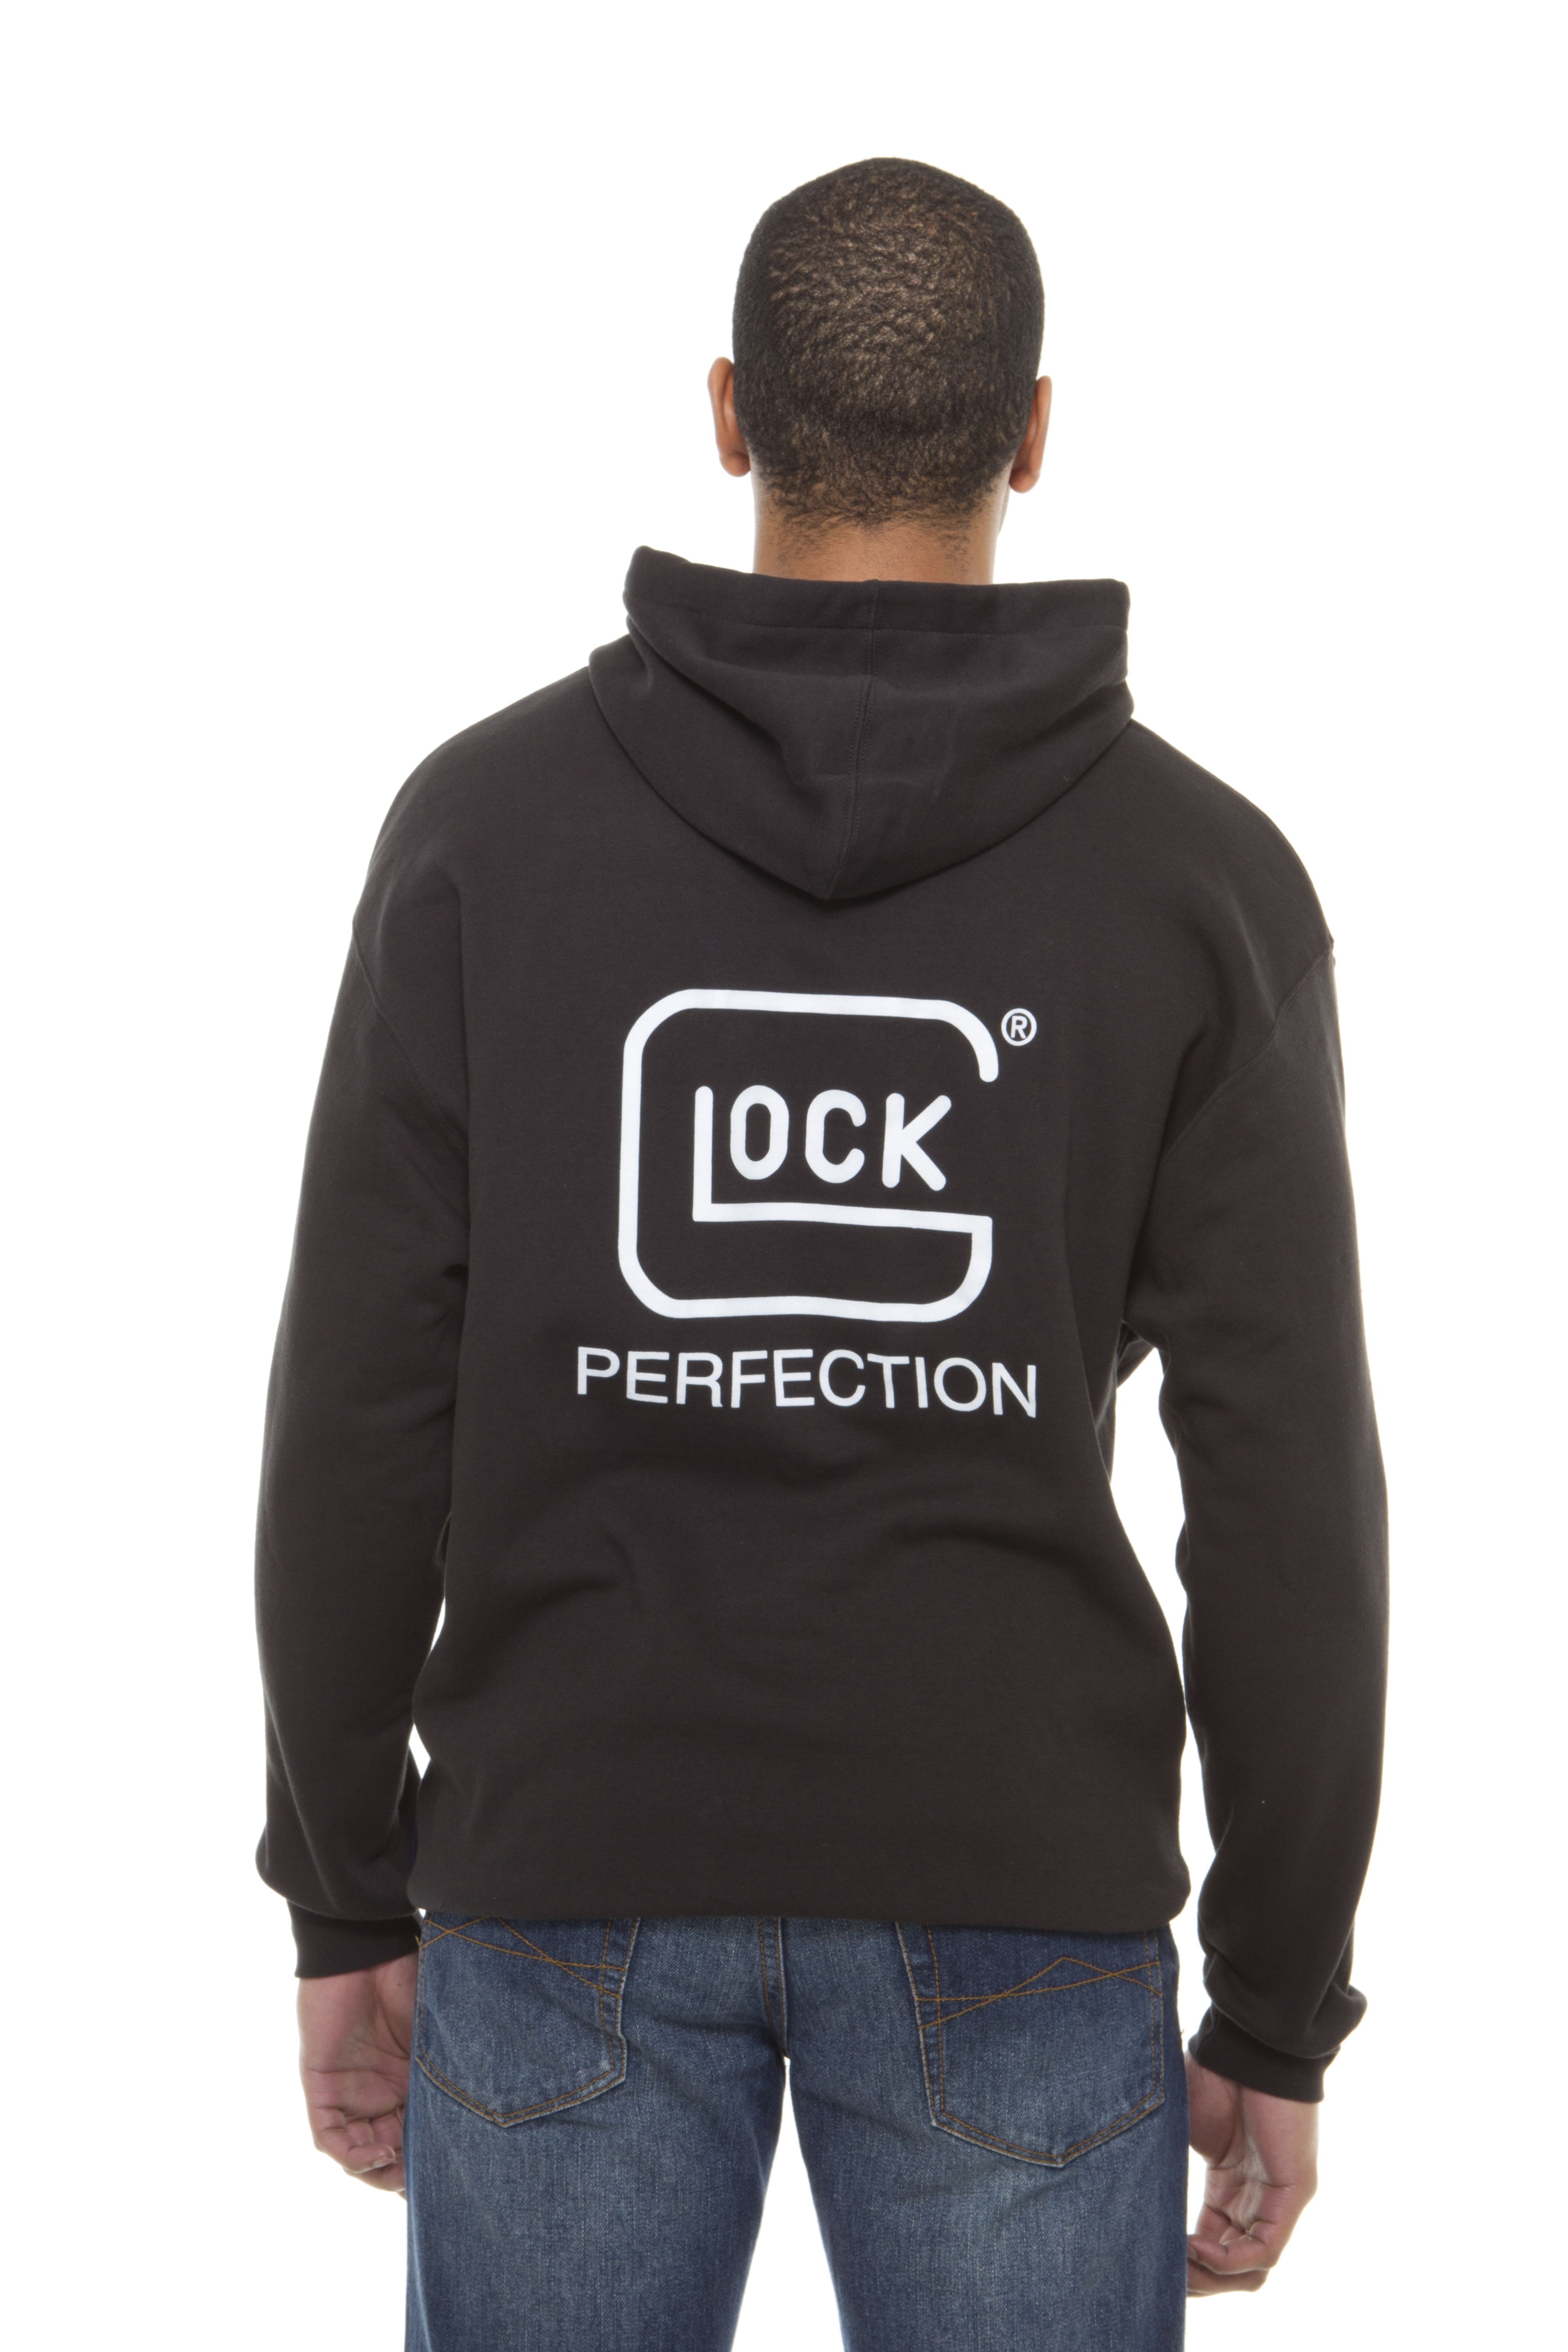 Glock Glock Hoodie Sweatshirt Black XL